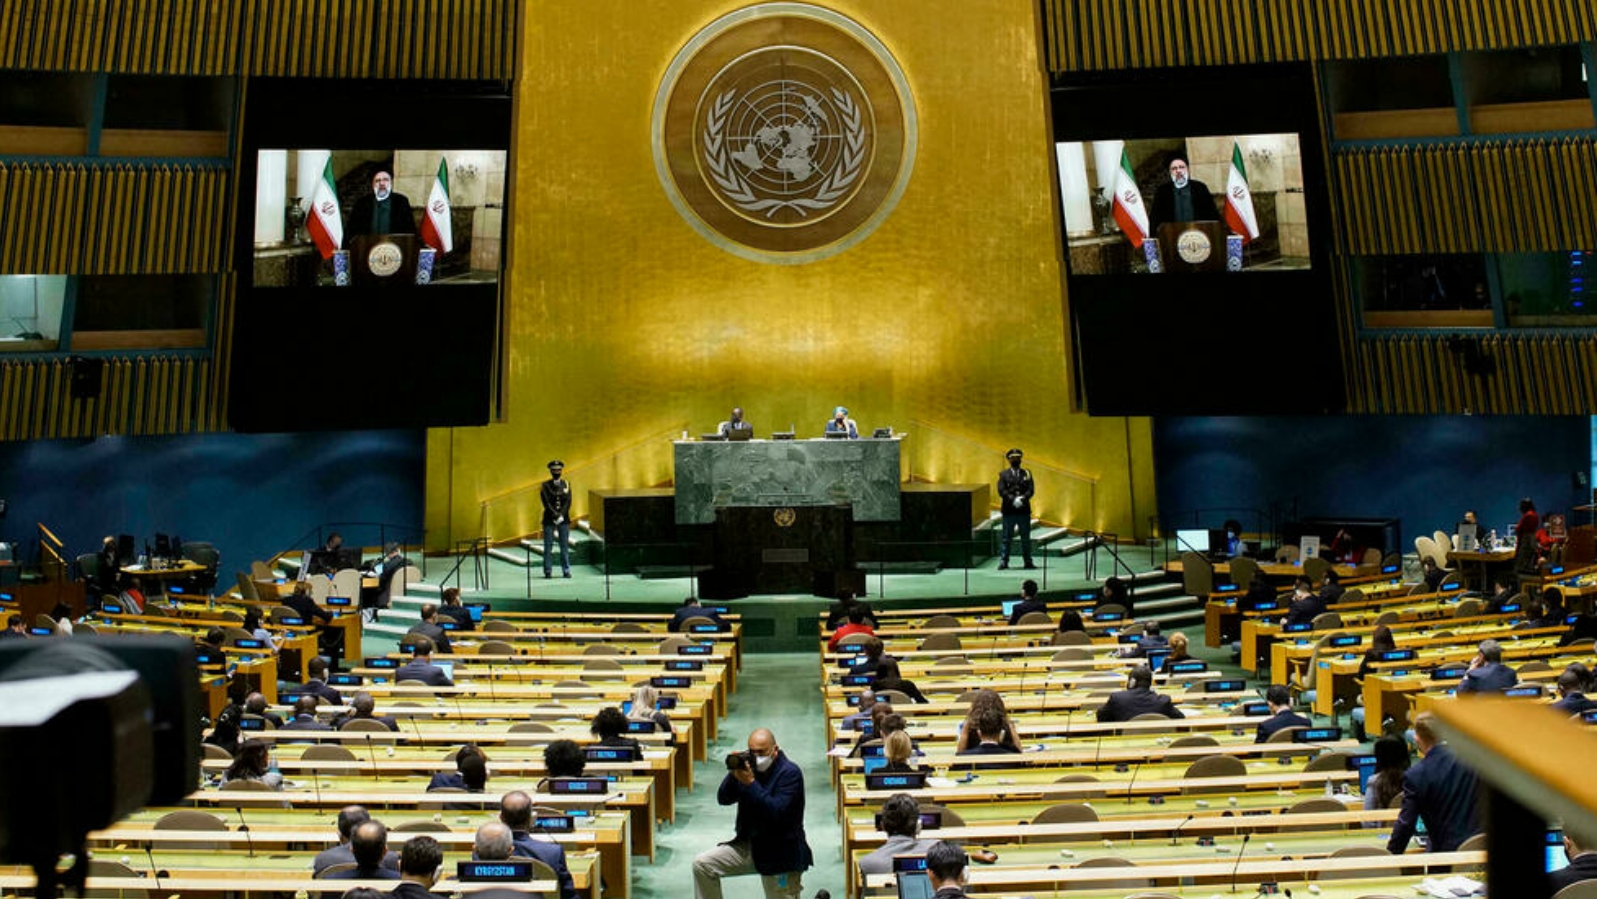 الرئيس الإيراني إبراهيم رئيسي يُلقي كلمته عبر الفيديو في الدورة 76 للجمعية العامة للأمم المتحدة في نيويورك. 21 أيلول/سبتمبر 2021.